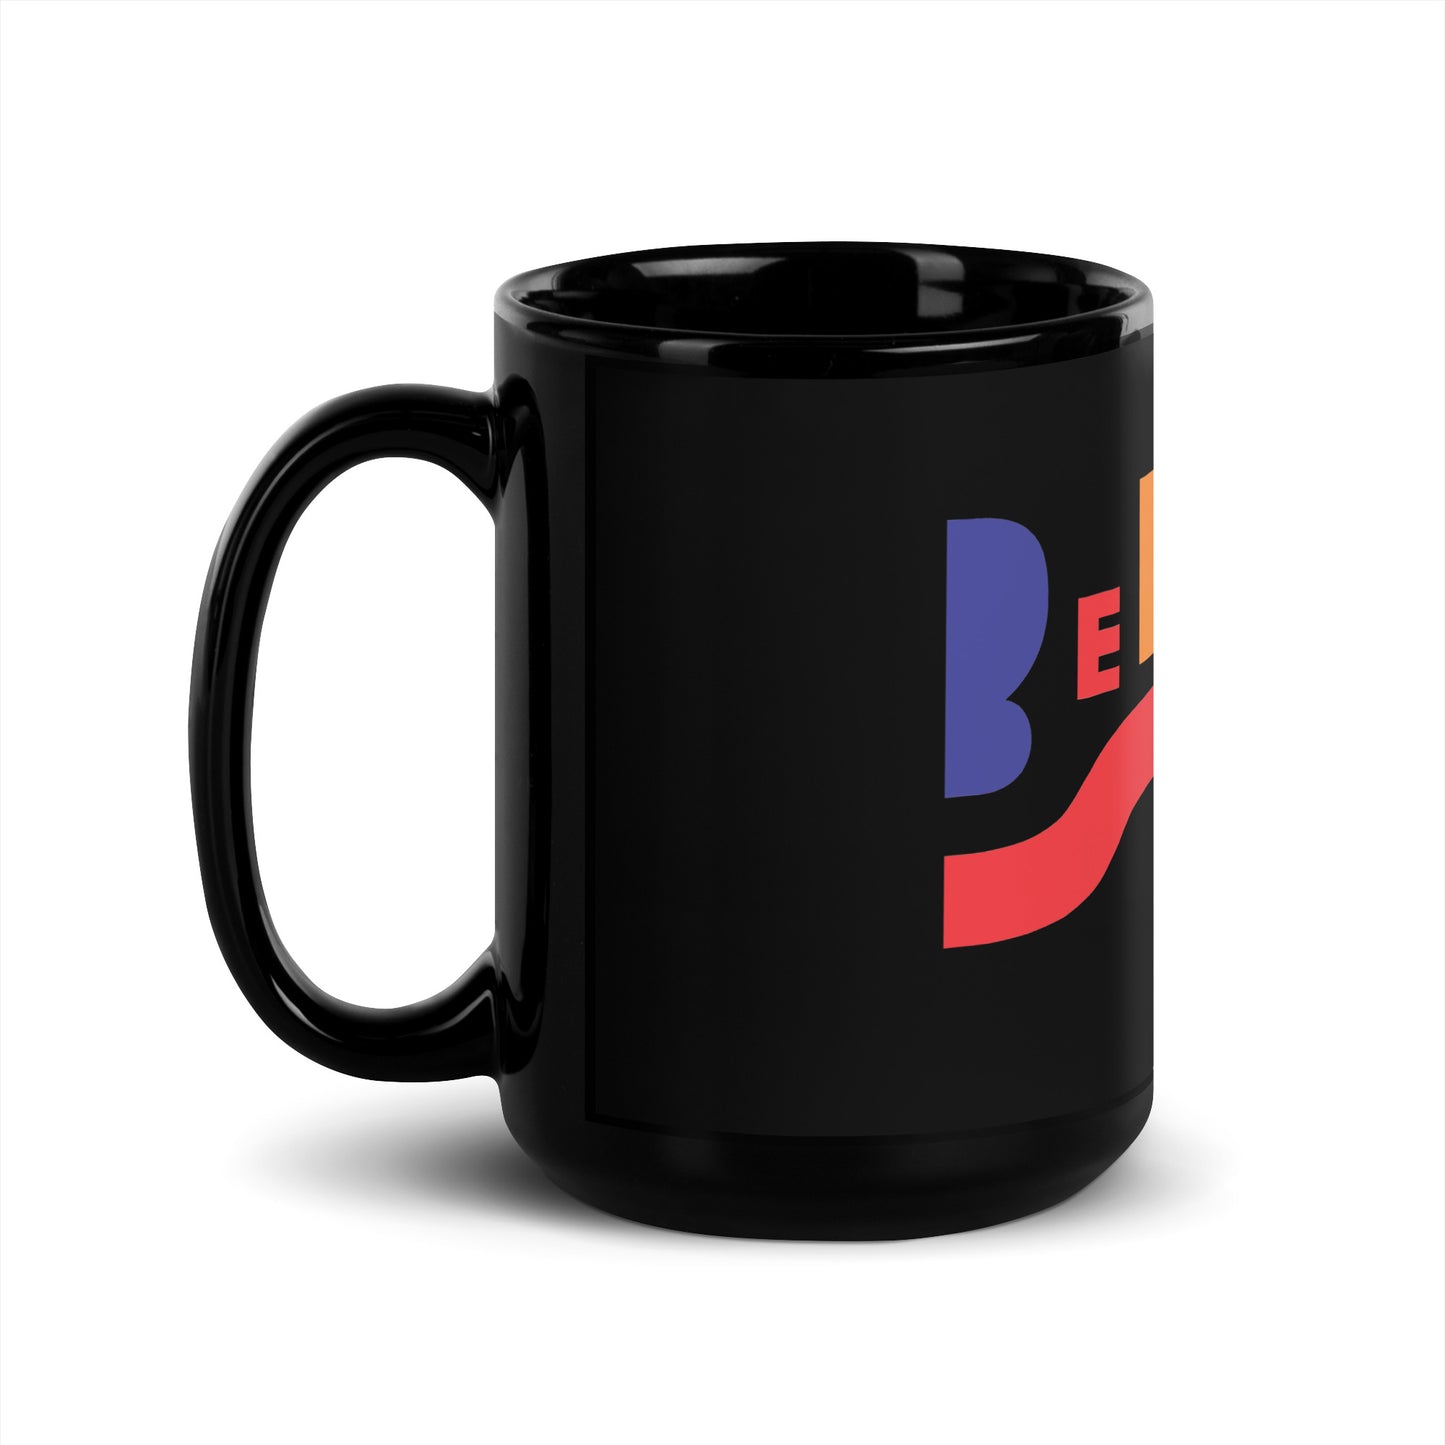 Belouis Some large black mug